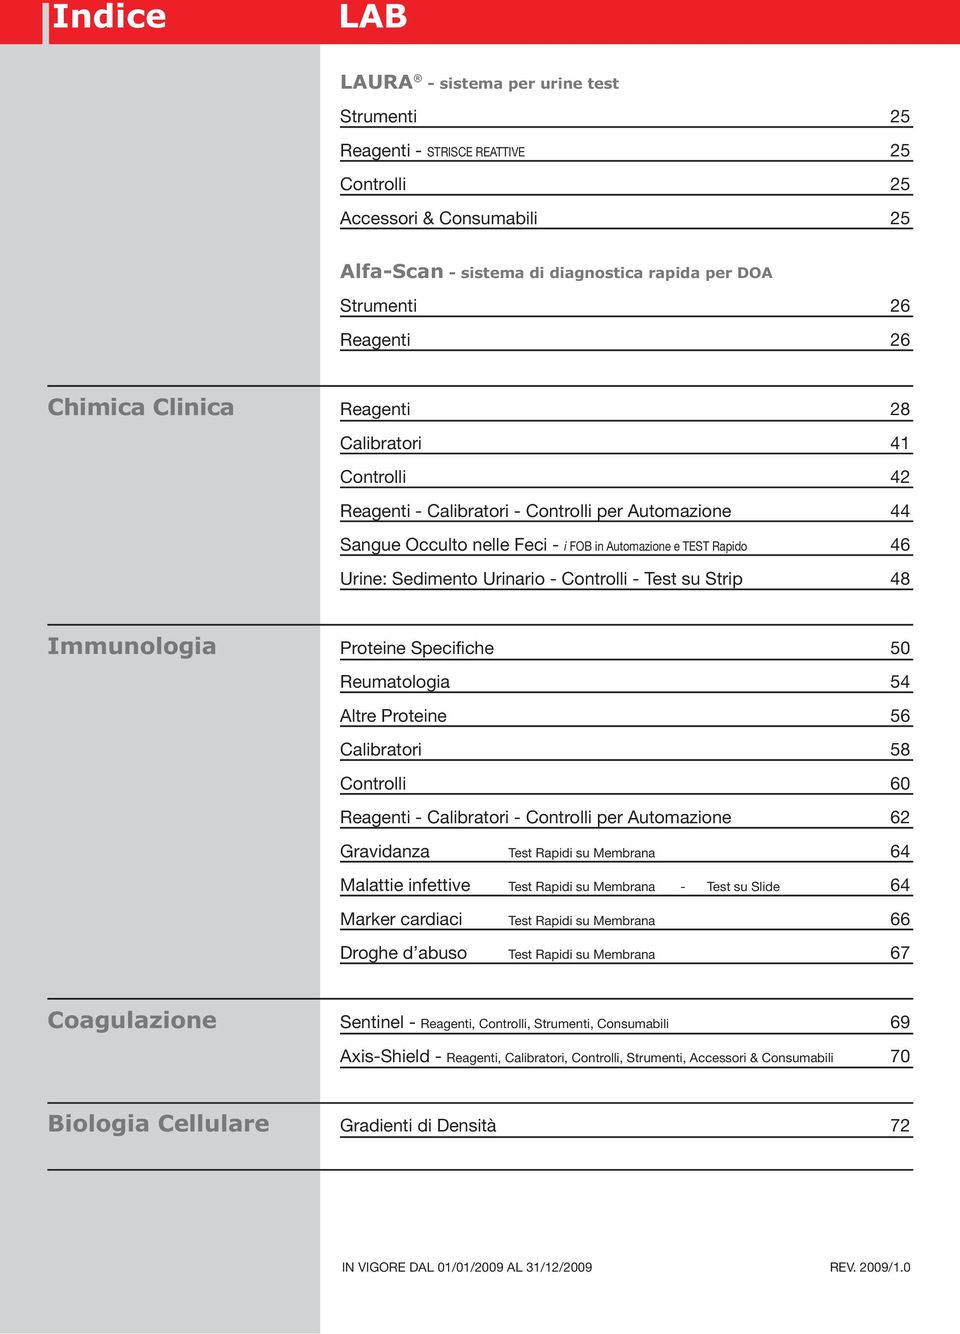 Urinario - Controlli - Test su Strip 48 Immunologia Proteine Specifiche 50 Reumatologia 54 Altre Proteine 56 Calibratori 58 Controlli 60 Reagenti - Calibratori - Controlli per Automazione 62